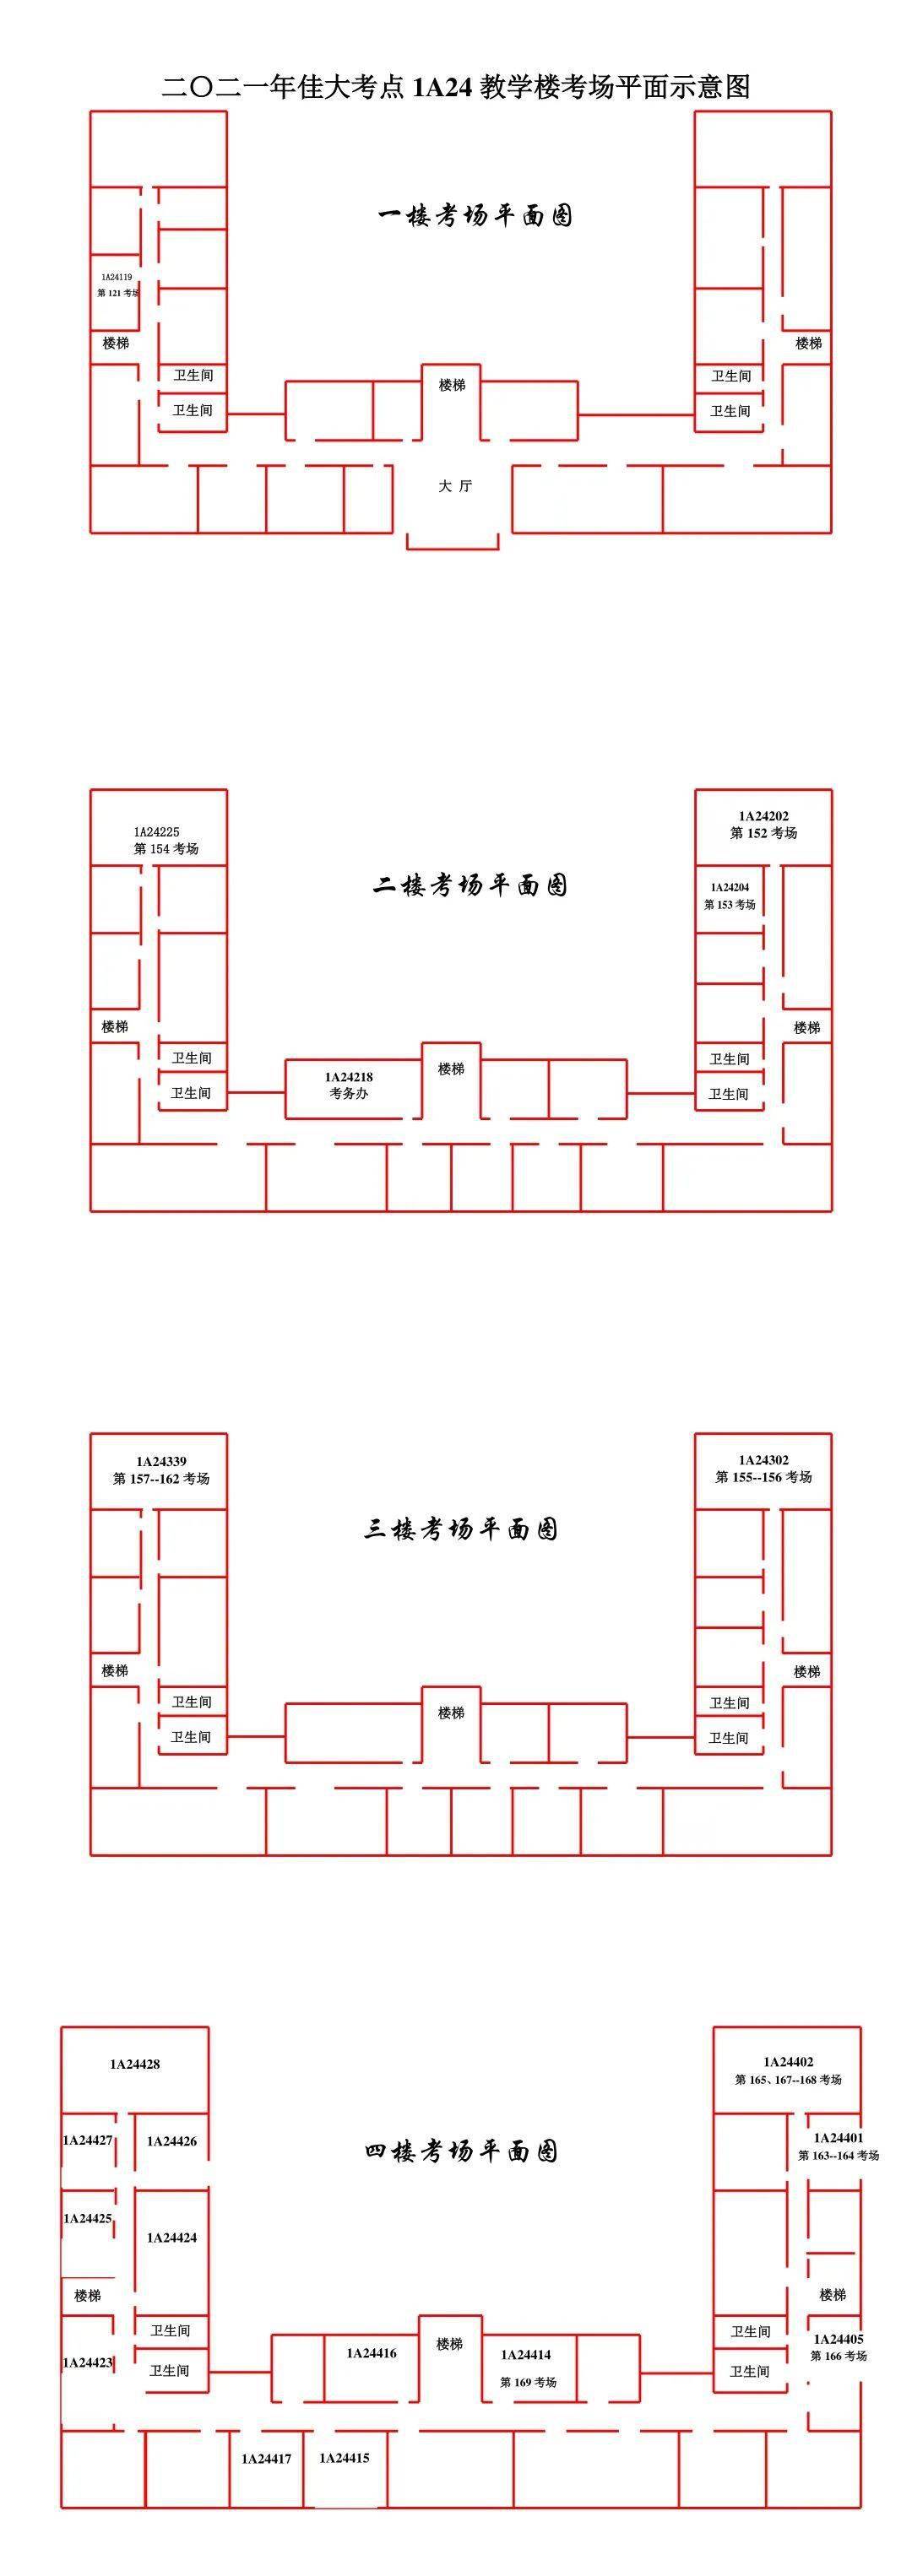 1a18基础实验楼平面图(218教室考务办)